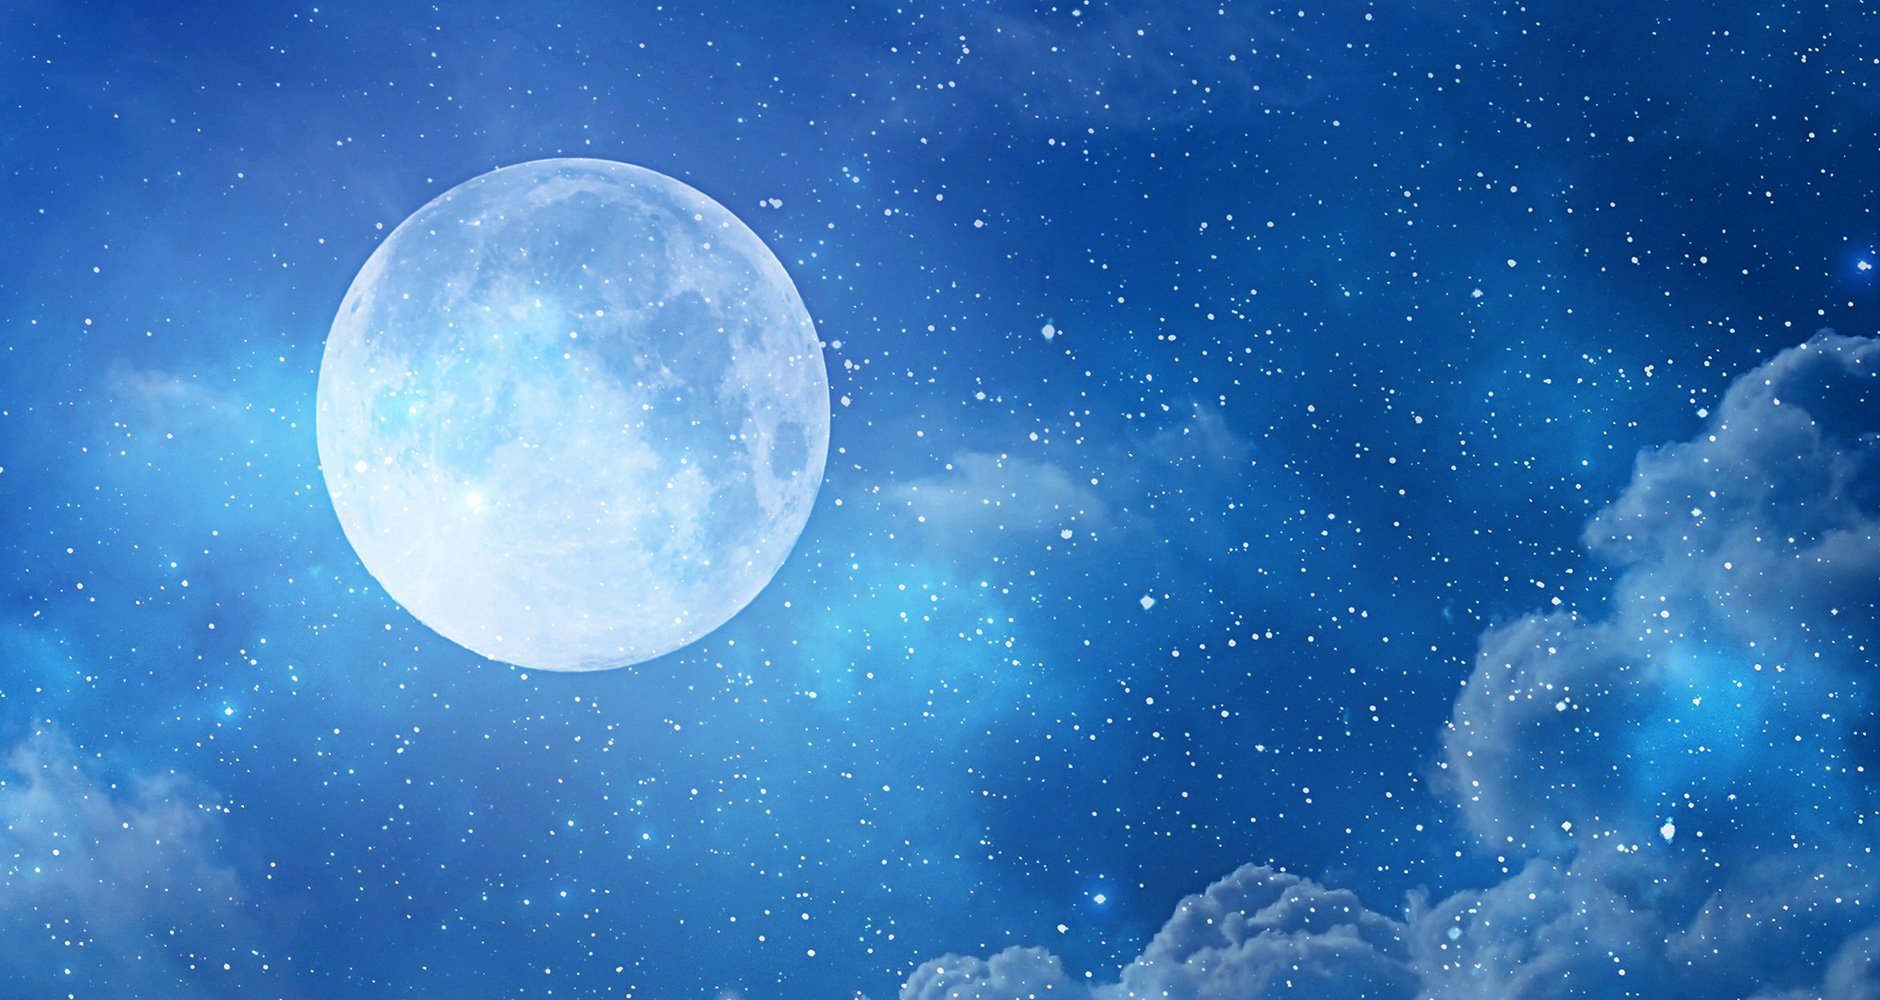 Свет бледной луны. Белоснежная Луна. Синяя Луна. Голубое небо с луной. Фон космос Луна.